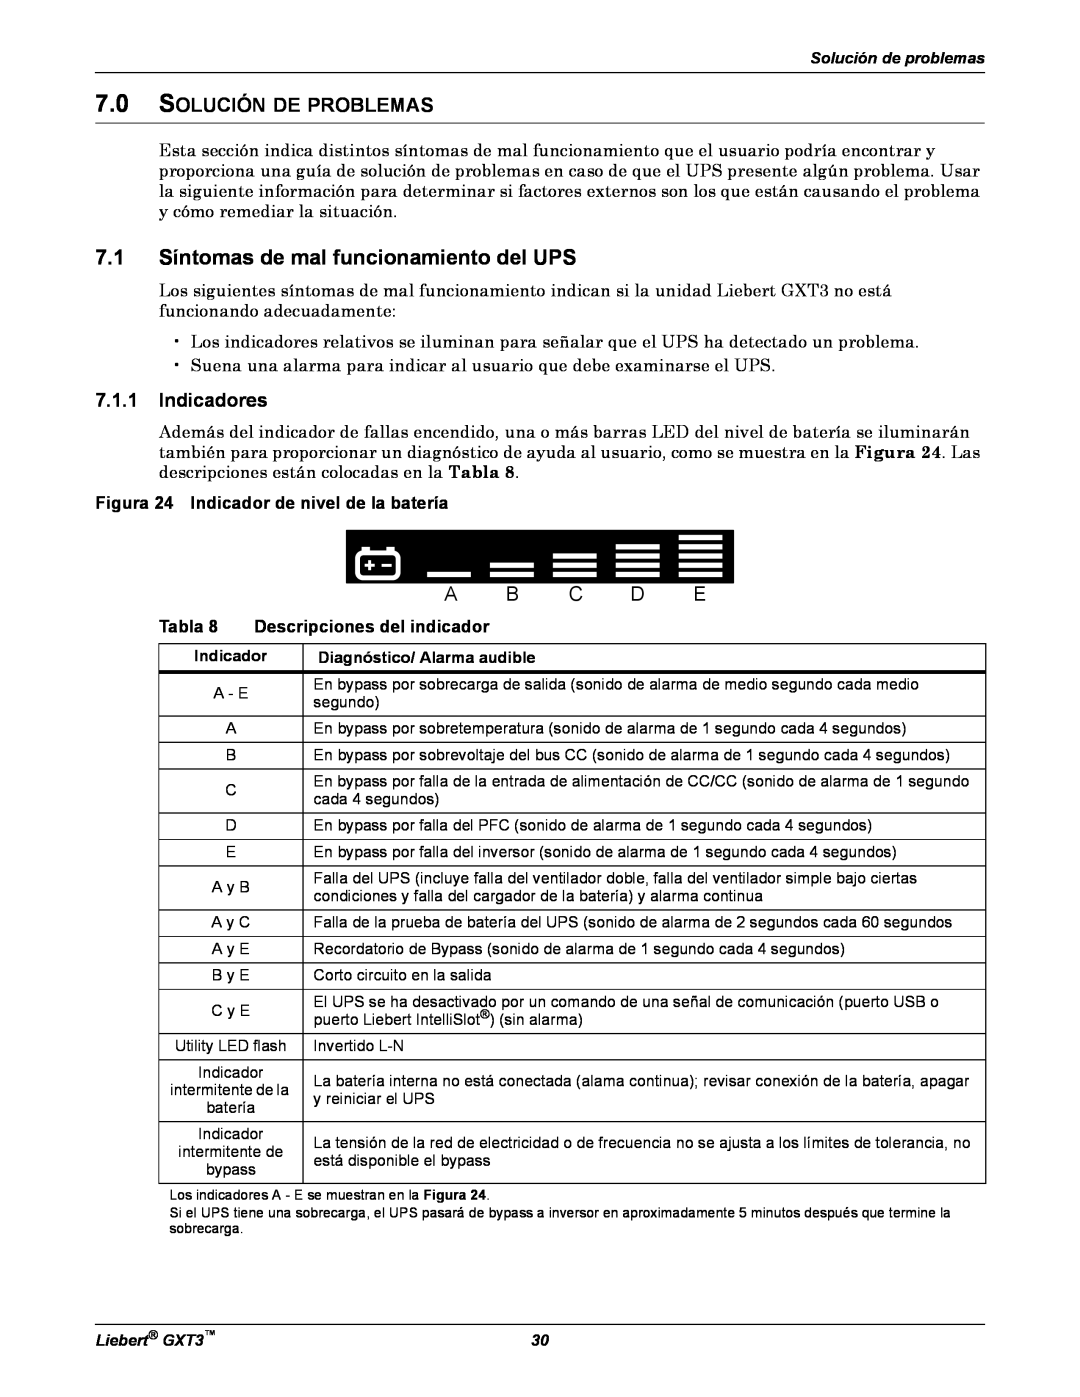 Emerson GXT3 manual 7.1 Síntomas de mal funcionamiento del UPS, Solución De Problemas, Indicadores, Tabla 